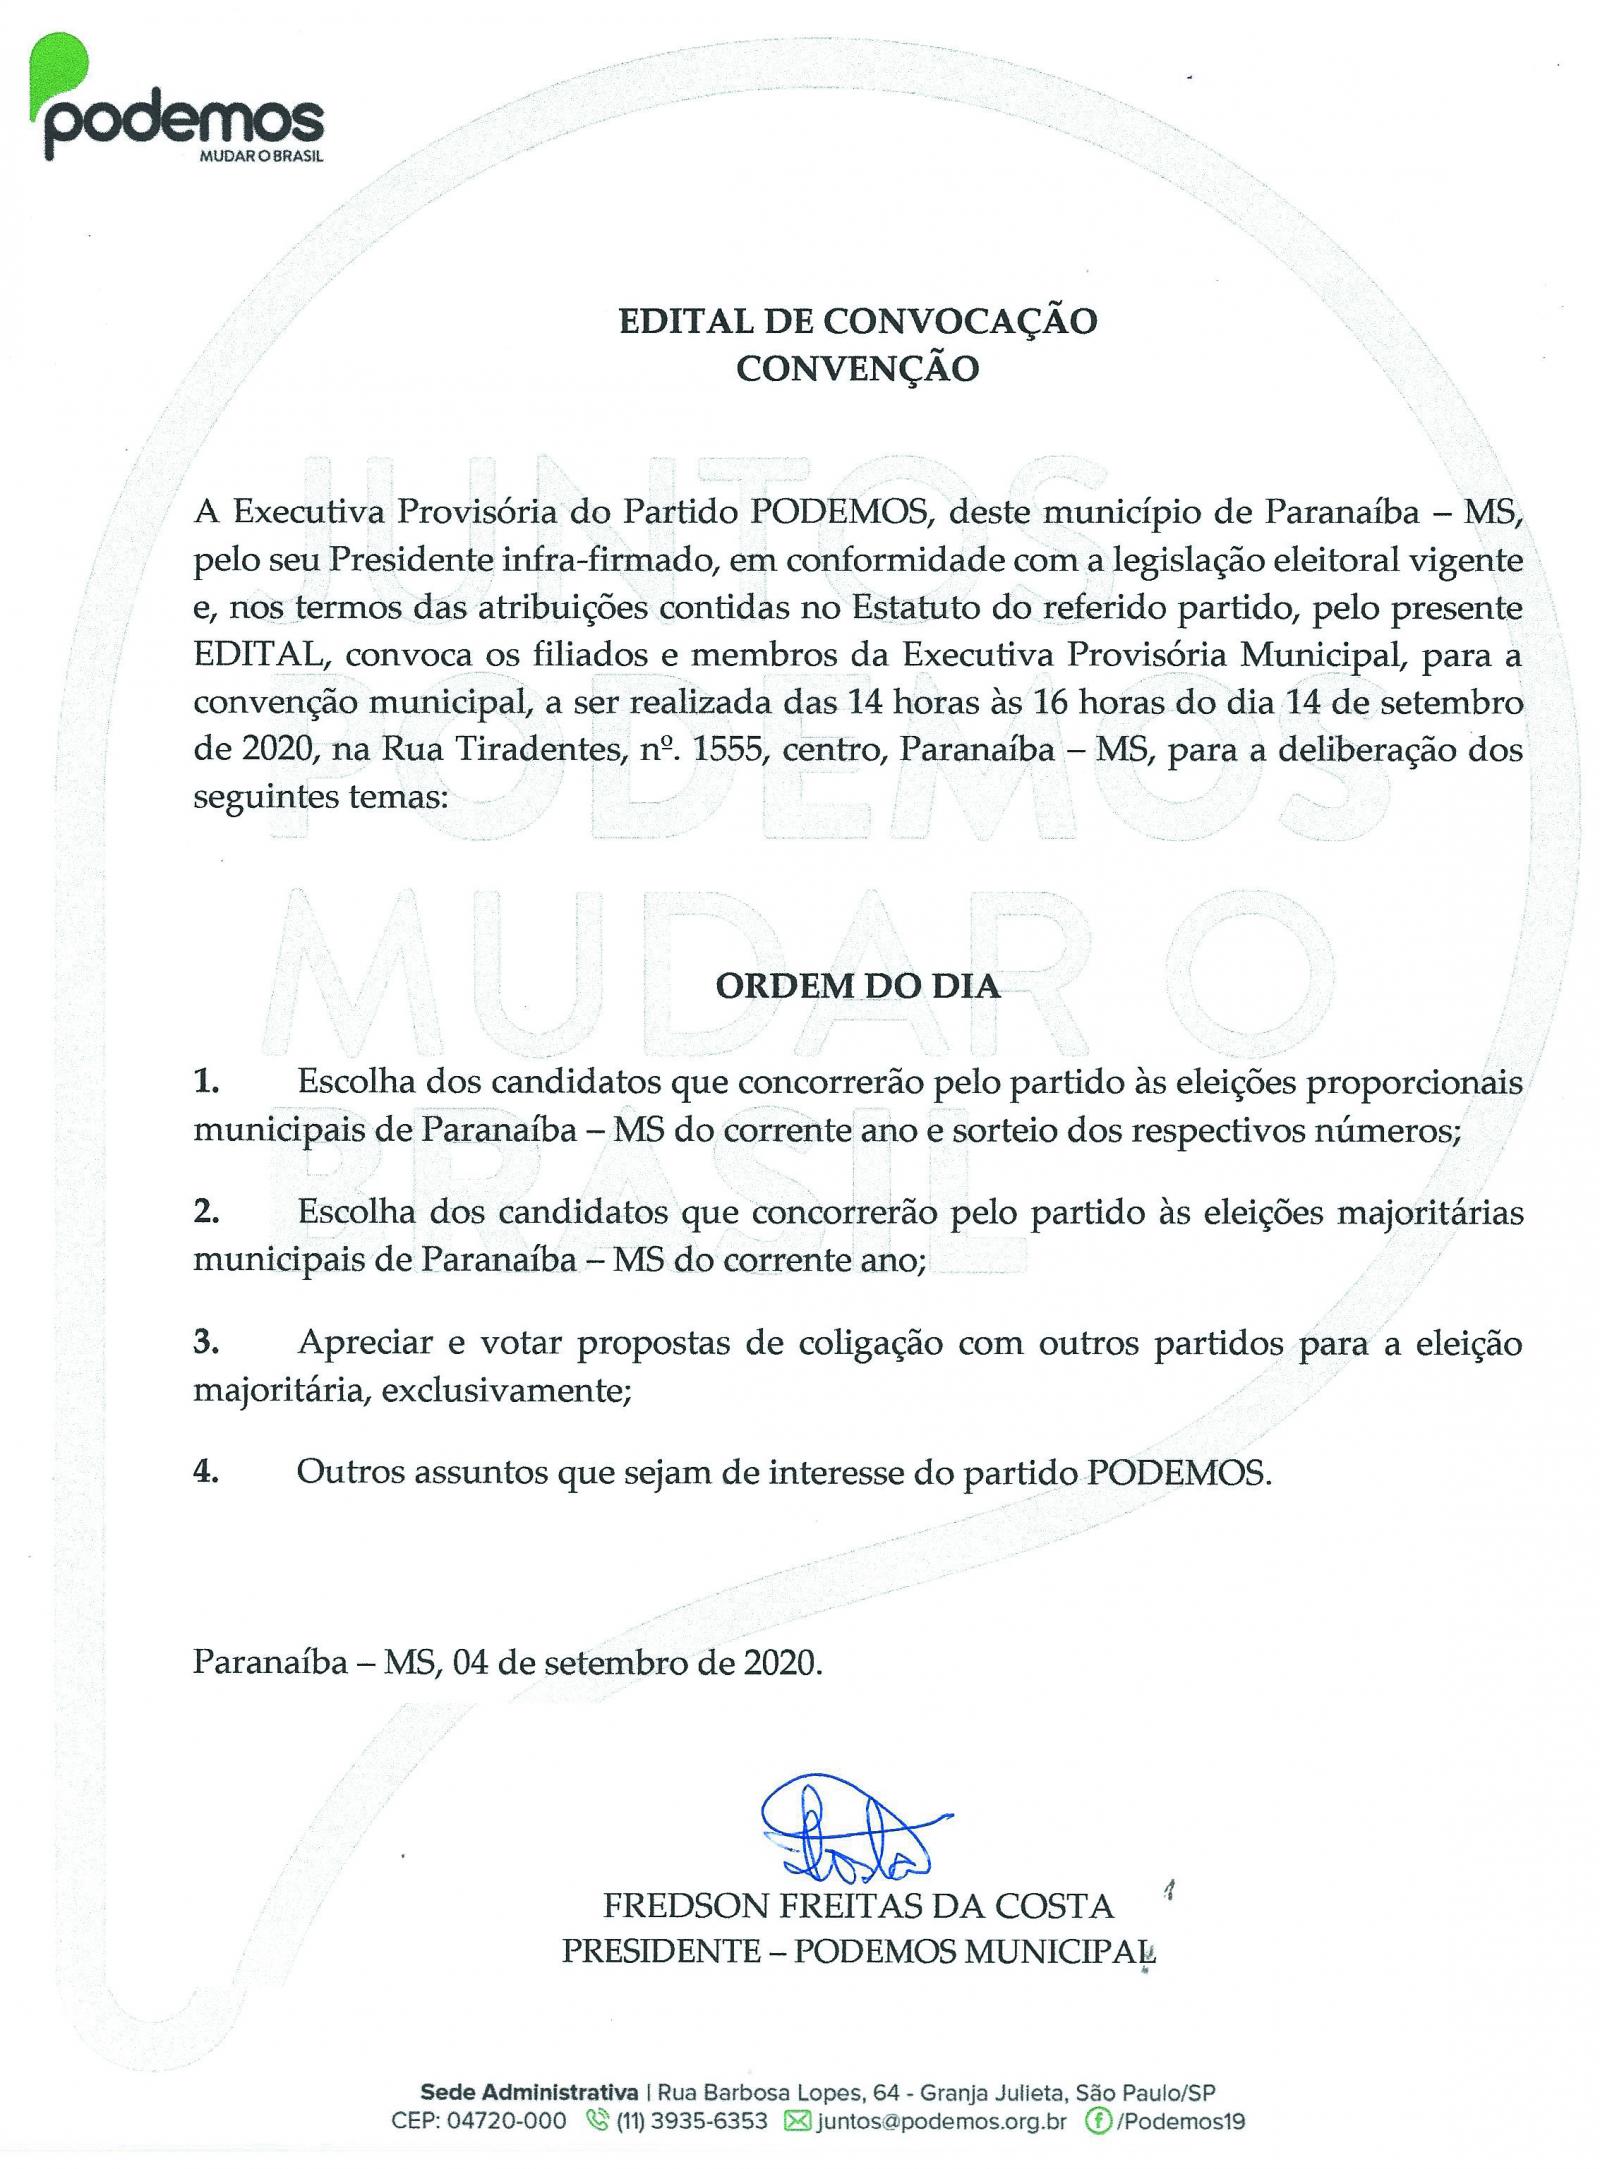 Edital de Convocação para Convenção Municipal do Podemos em Paranaíba